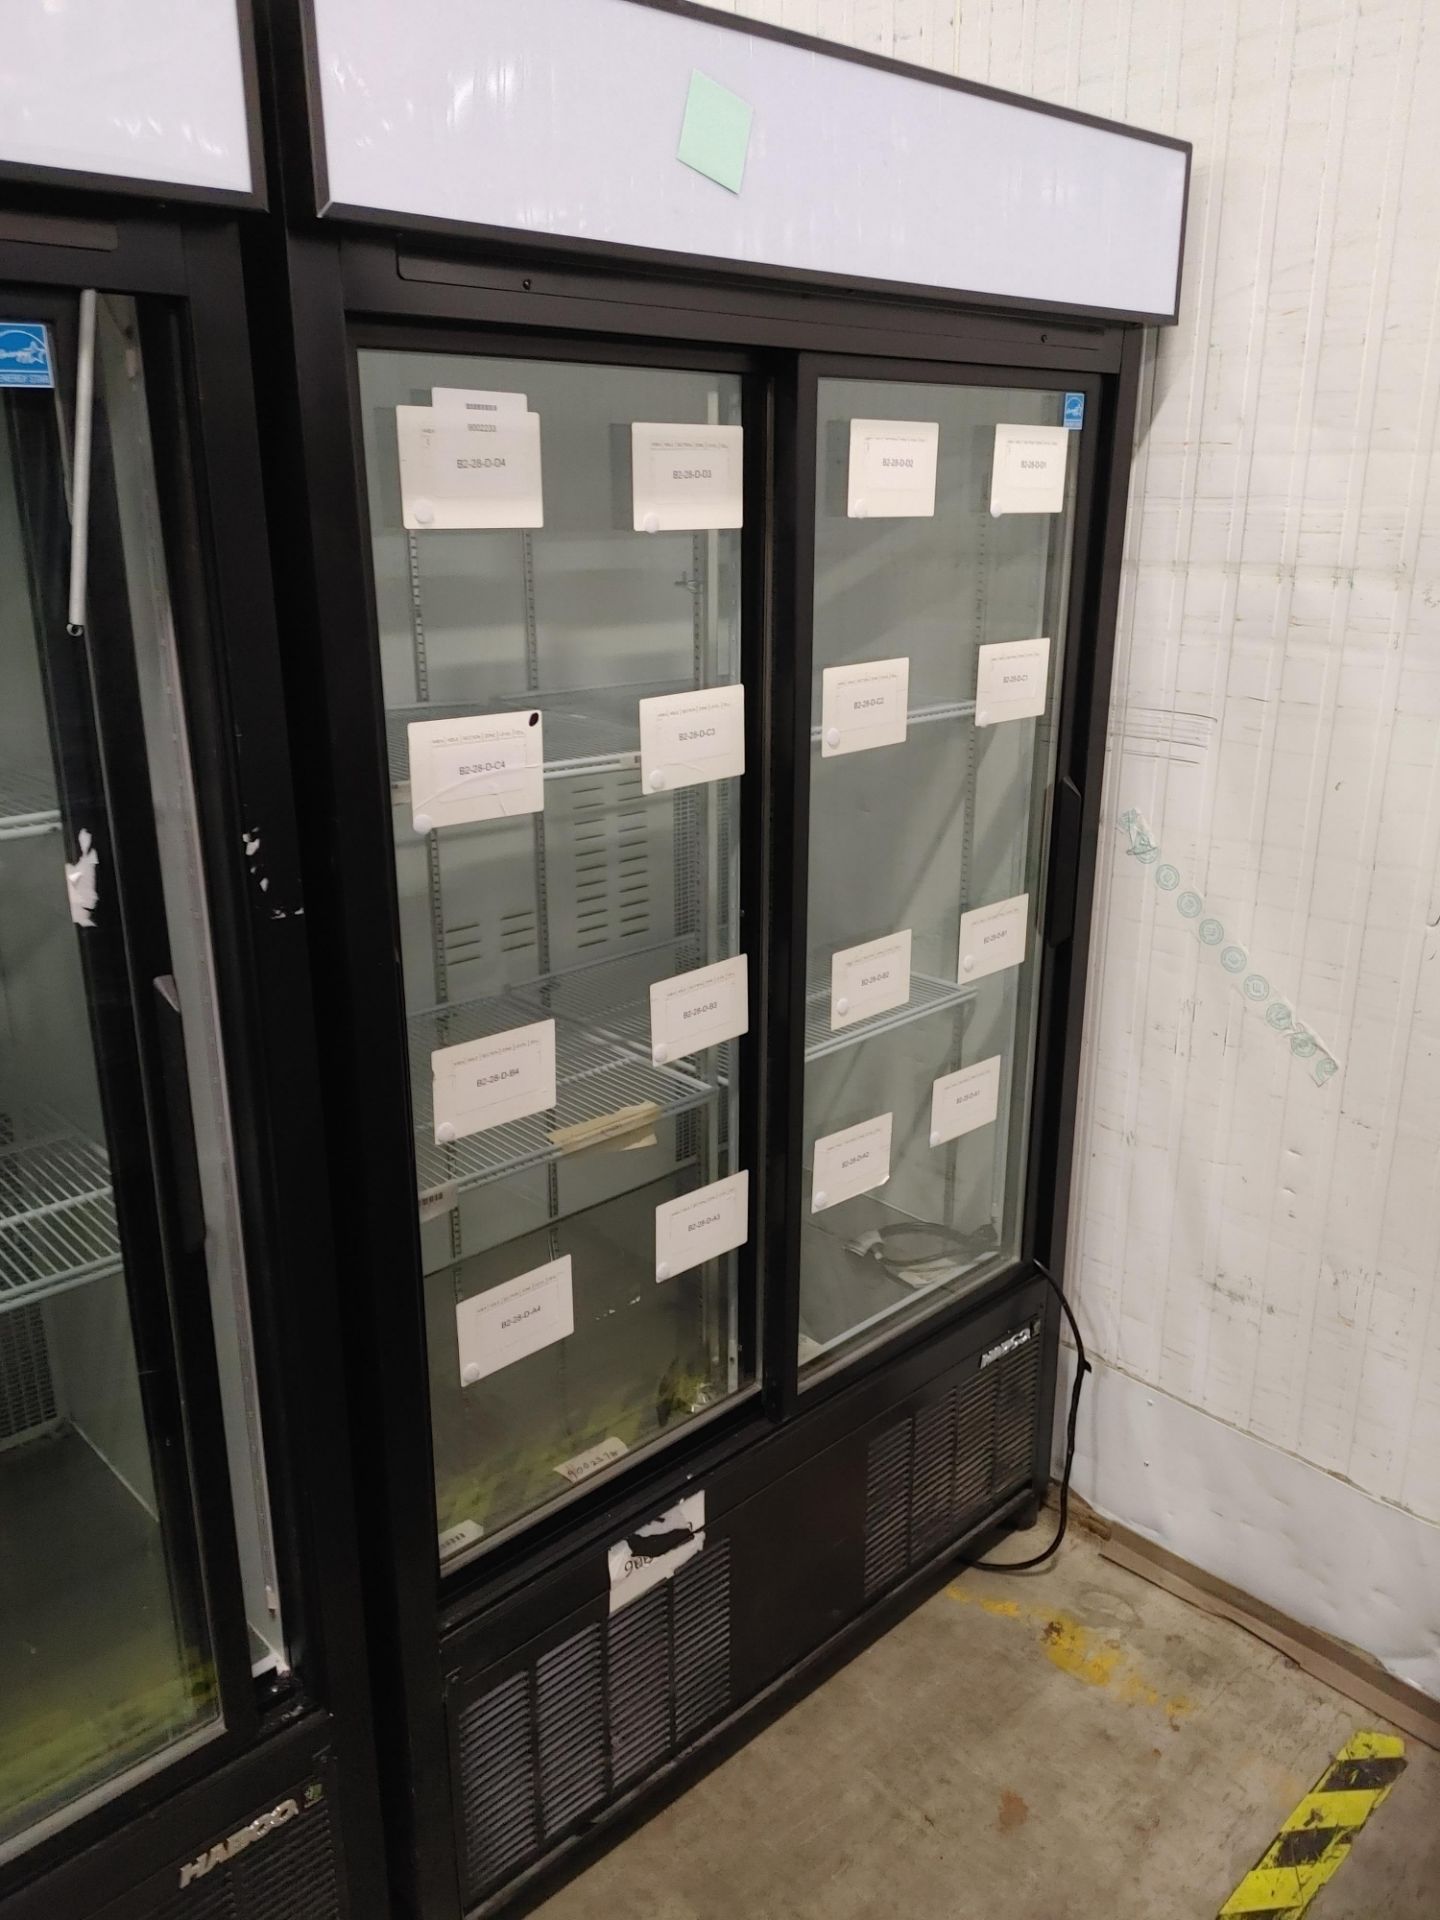 Habco "ESM42HC" 2 Door Refrigerator S/N 42066125